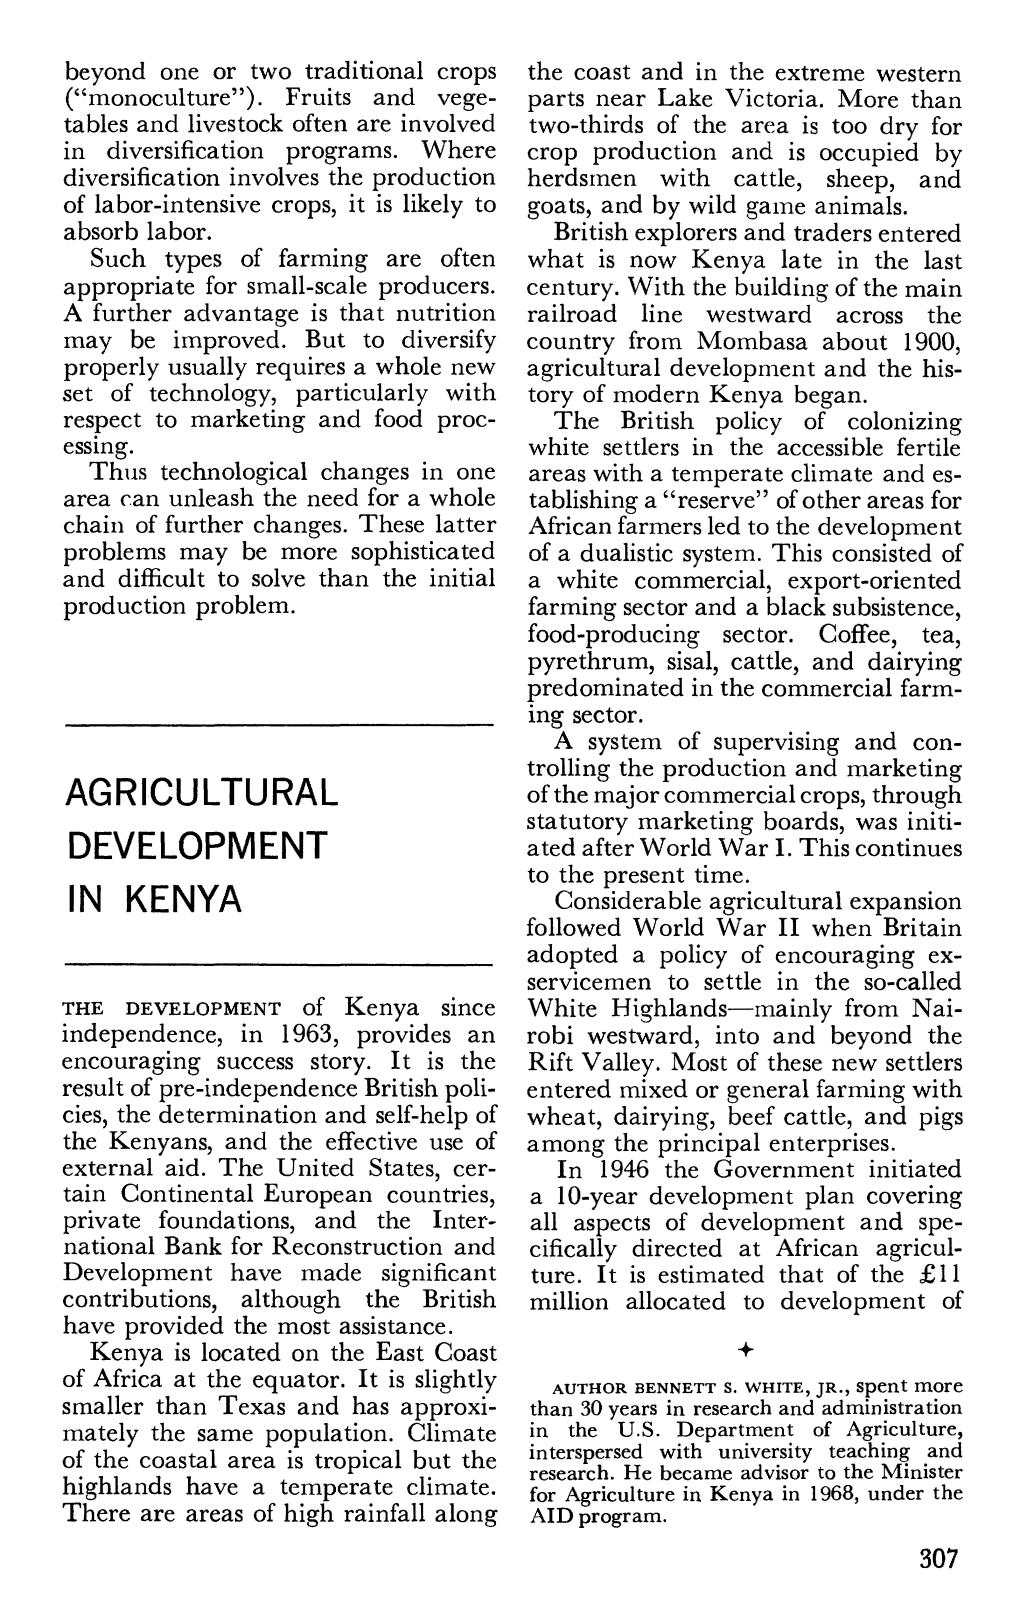 Agricultural Development in Kenya